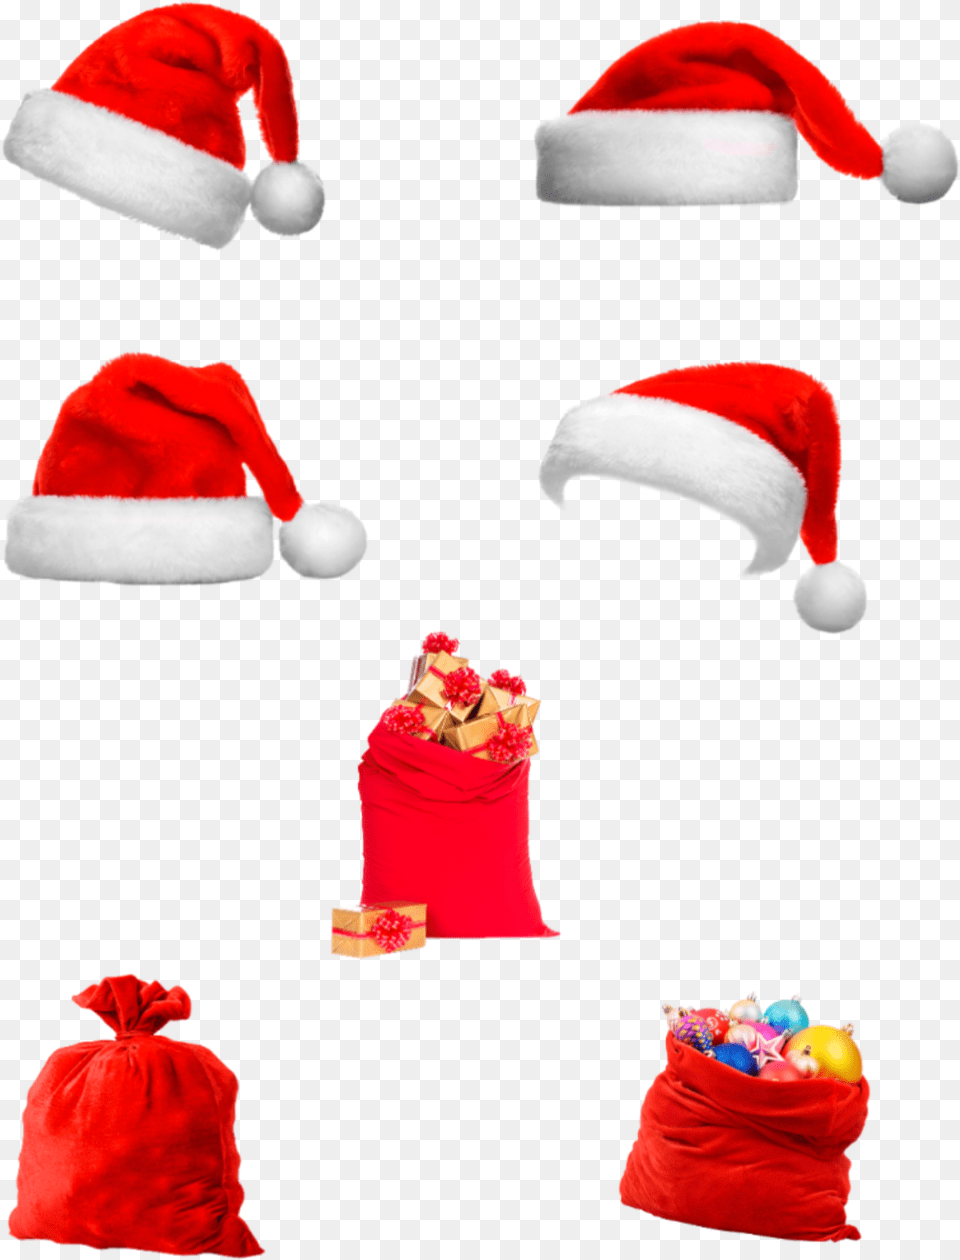 Santa Hat Santahat Bags Present Holiday Christmas Santa Claus, Clothing, Cap, Plush, Toy Free Png Download